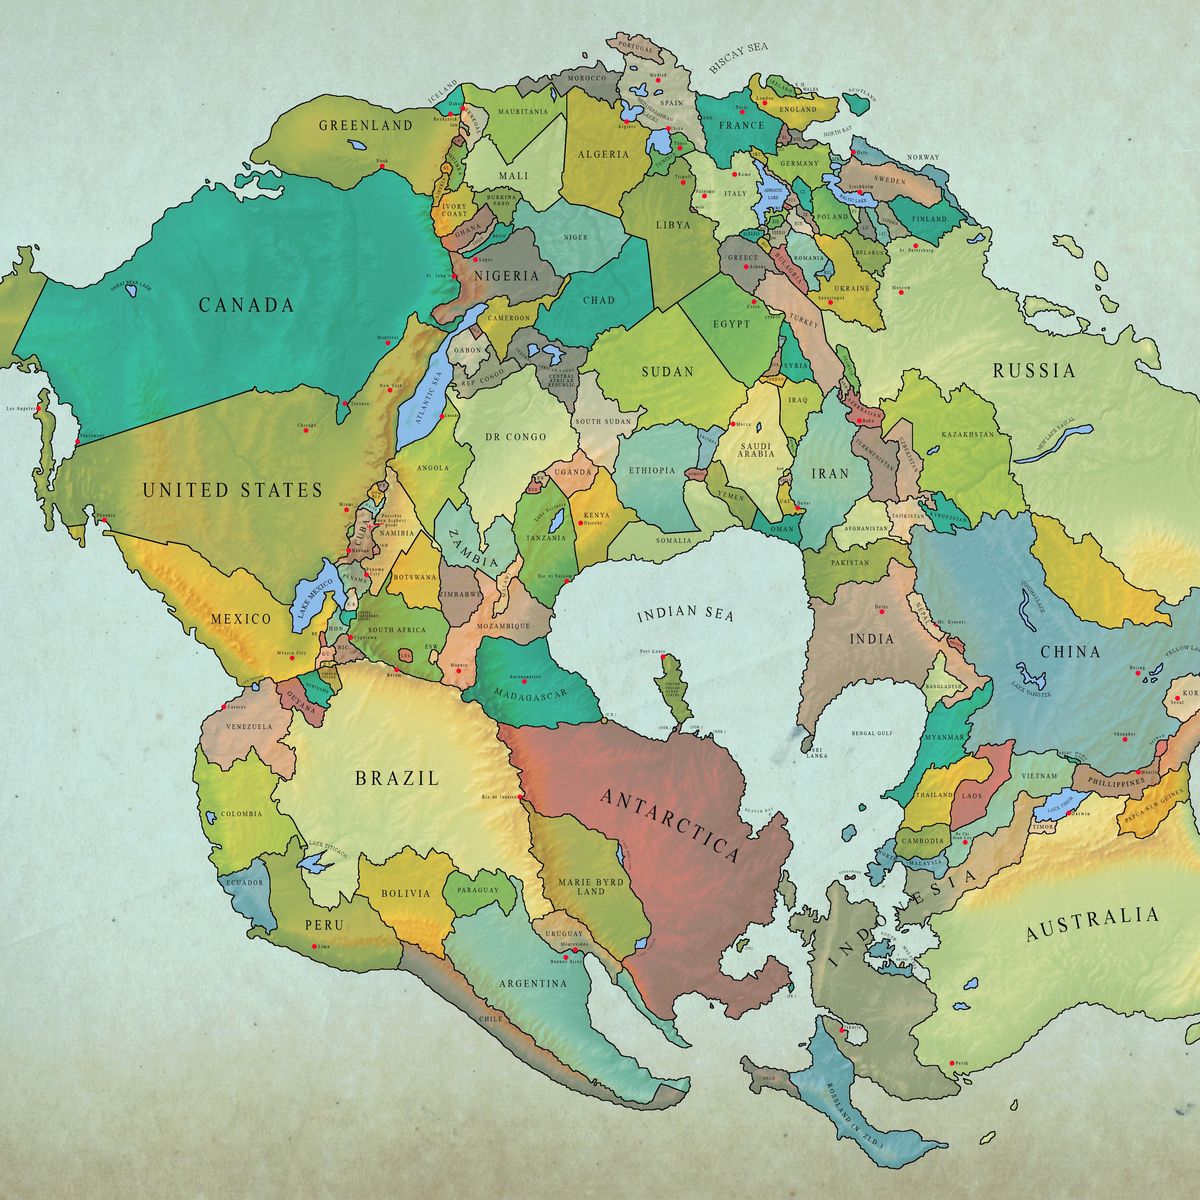 El mapa que muestra cómo será el mundo en 250 millones de años